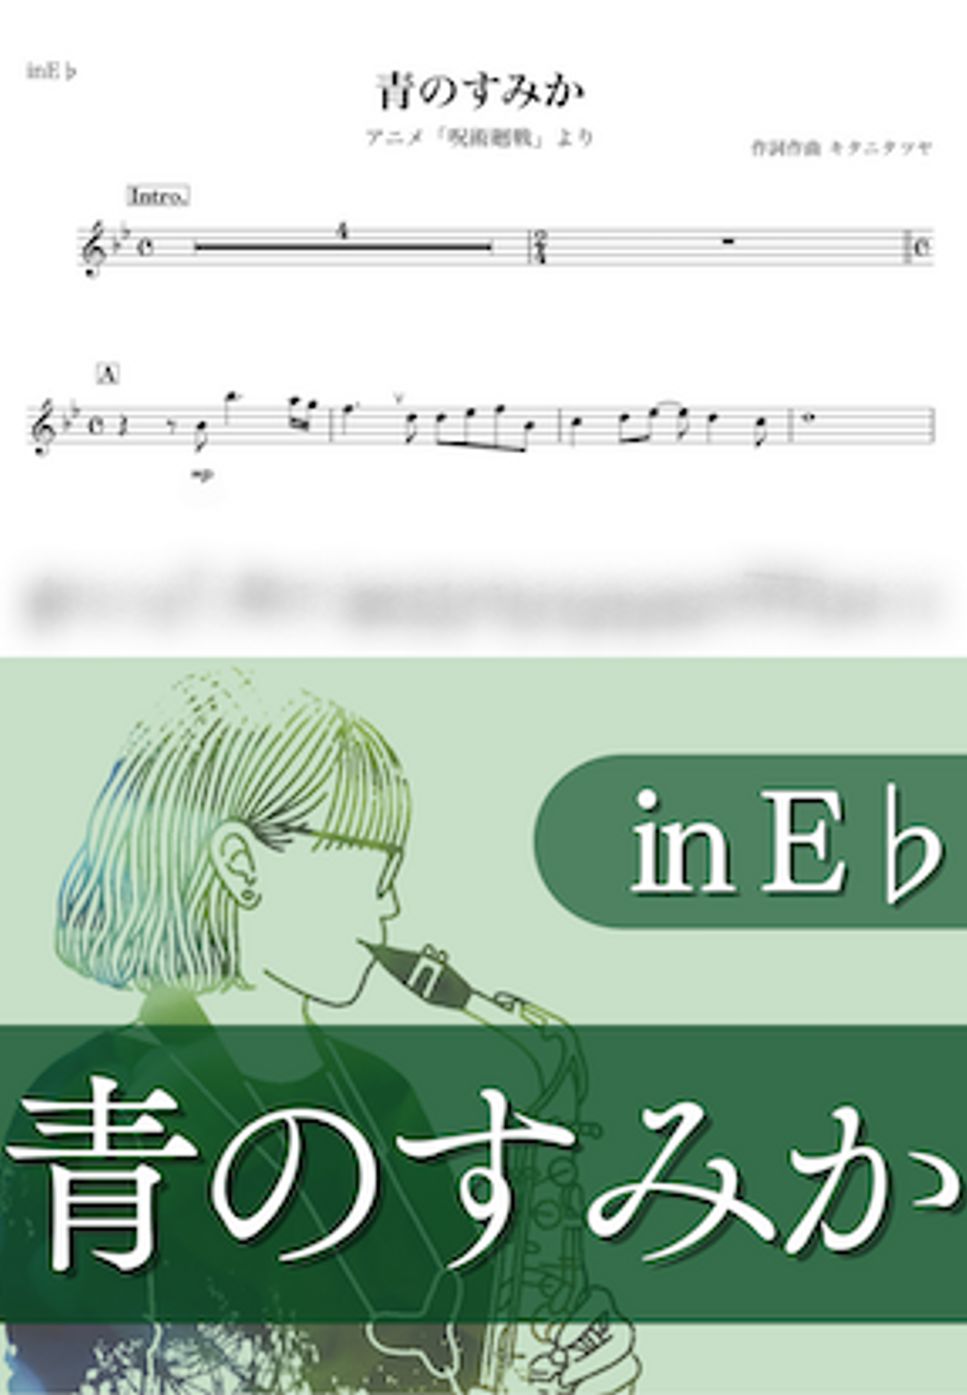 呪術廻戦 - 青のすみか (E♭) by kanamusic